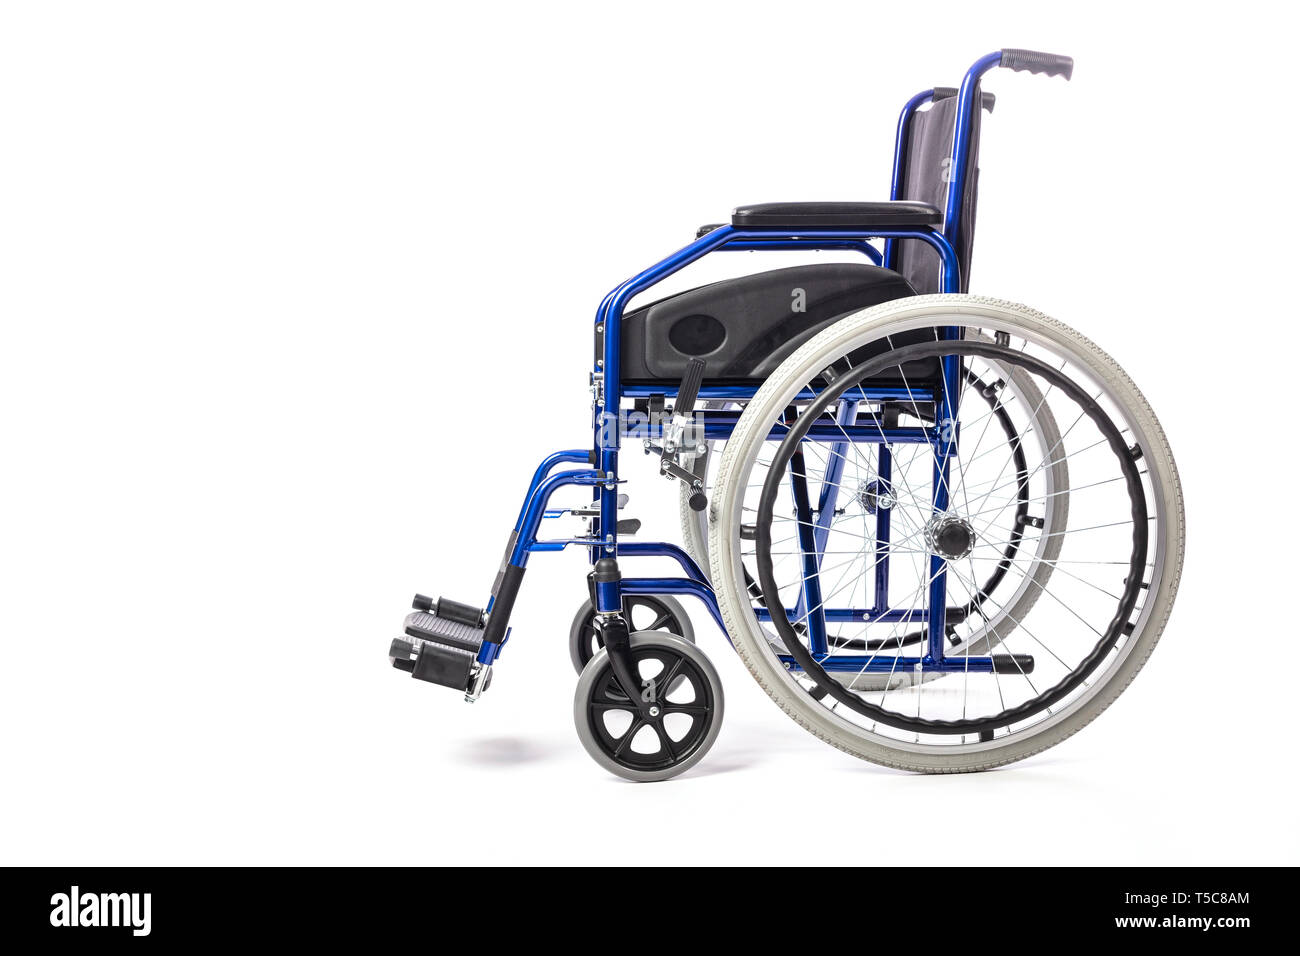 Détail d'un fauteuil roulant classique pour handicap physique sur un fond blanc. Concept de soins hospitaliers et de l'invalidité, side view Banque D'Images